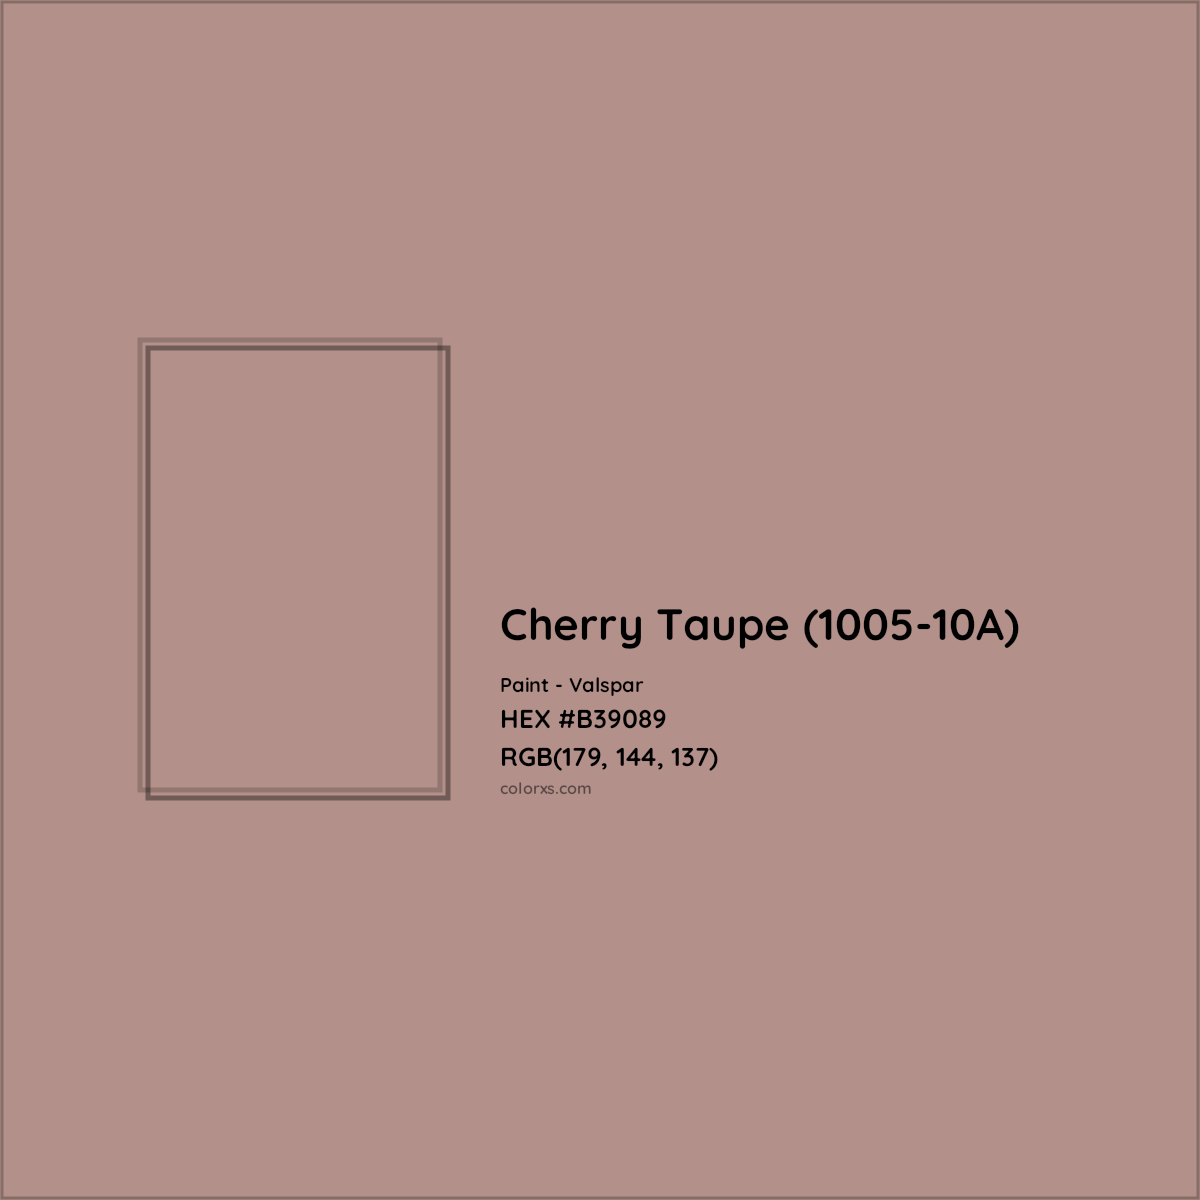 HEX #B39089 Cherry Taupe (1005-10A) Paint Valspar - Color Code